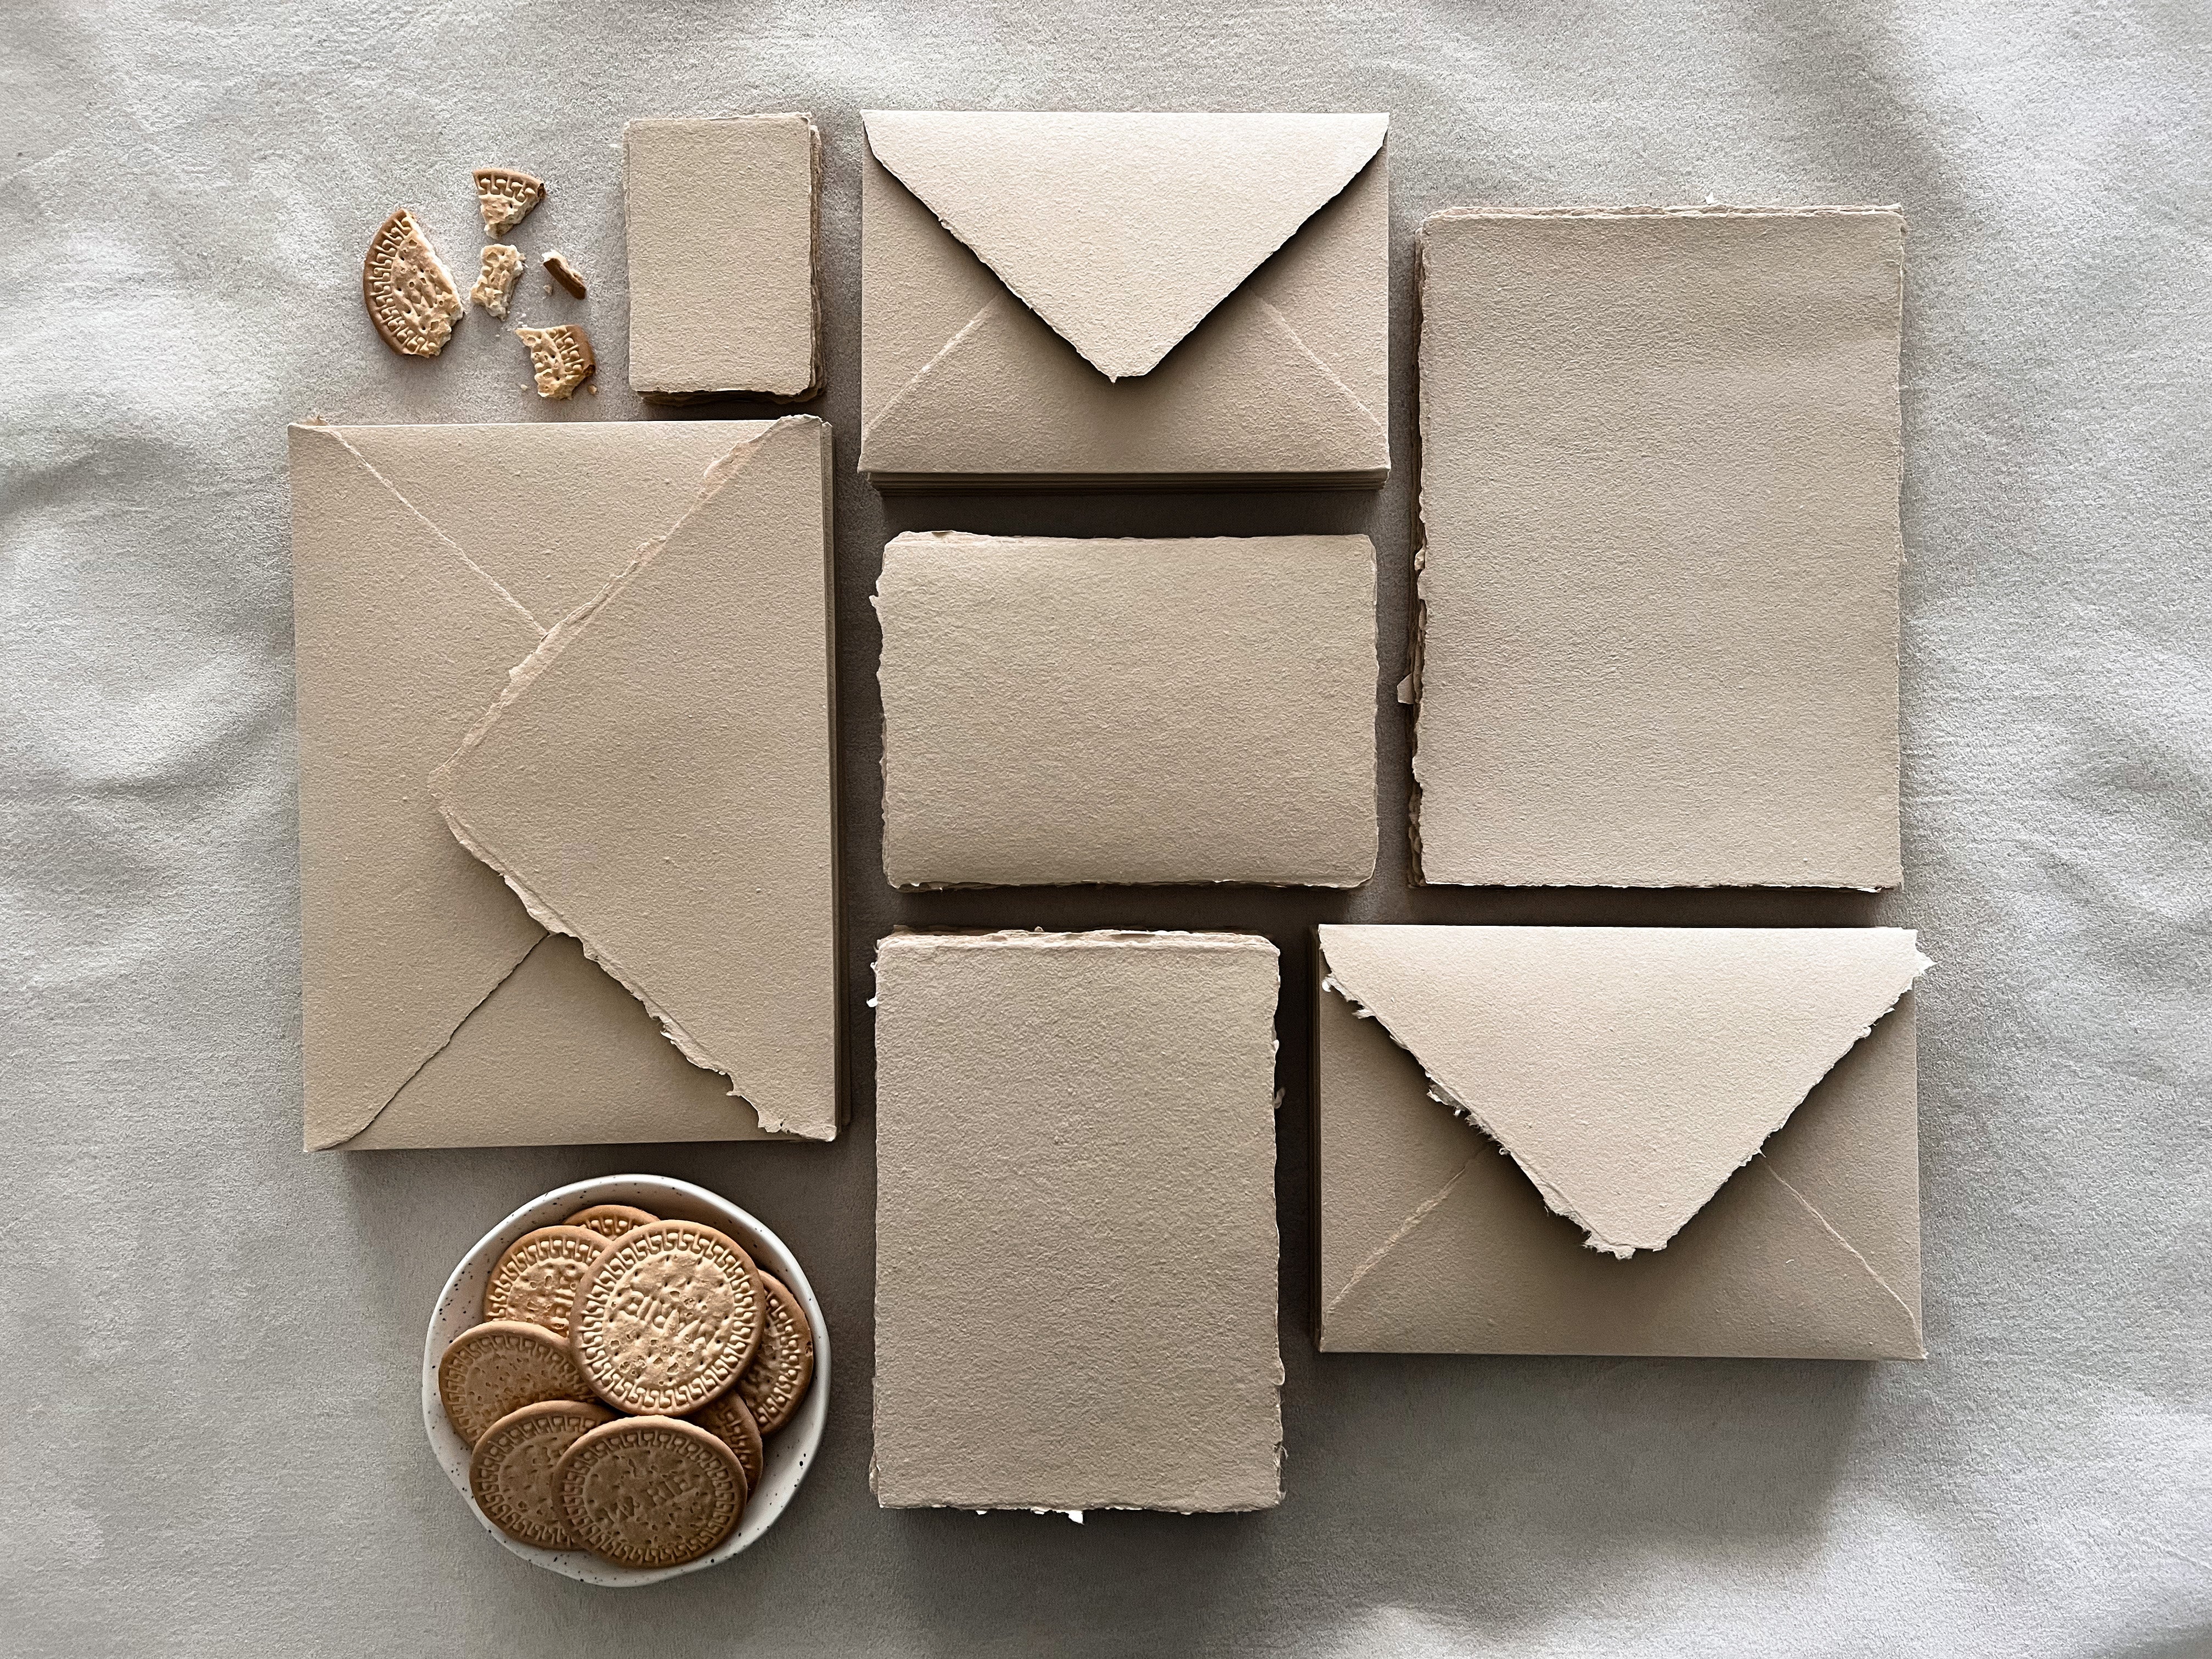 Handmade Paper Envelopes